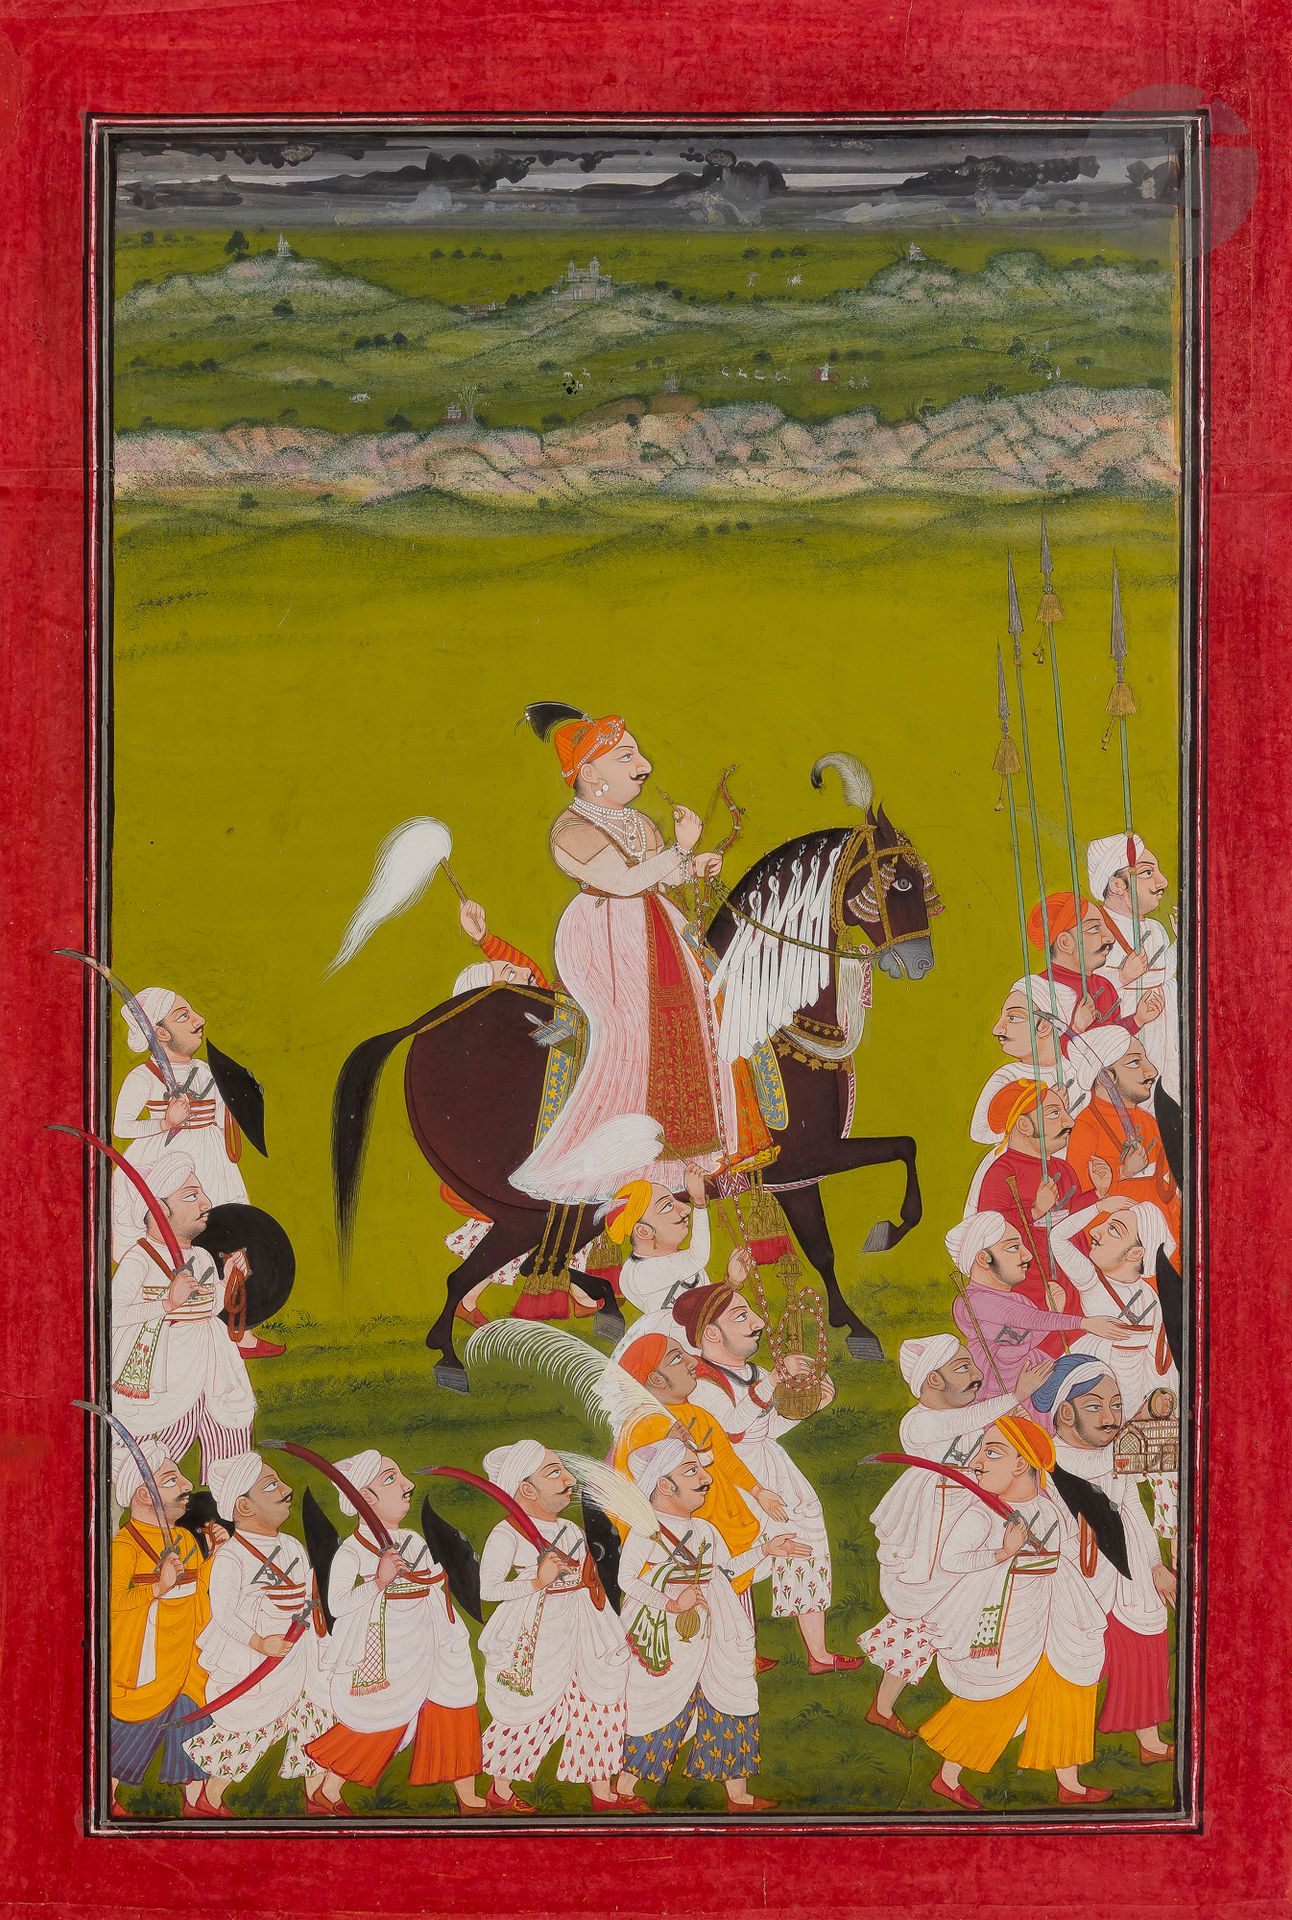 Null Raja desfilando, Norte de la India, Rajastán, Mewar, c. 1765
Pigmentos y or&hellip;